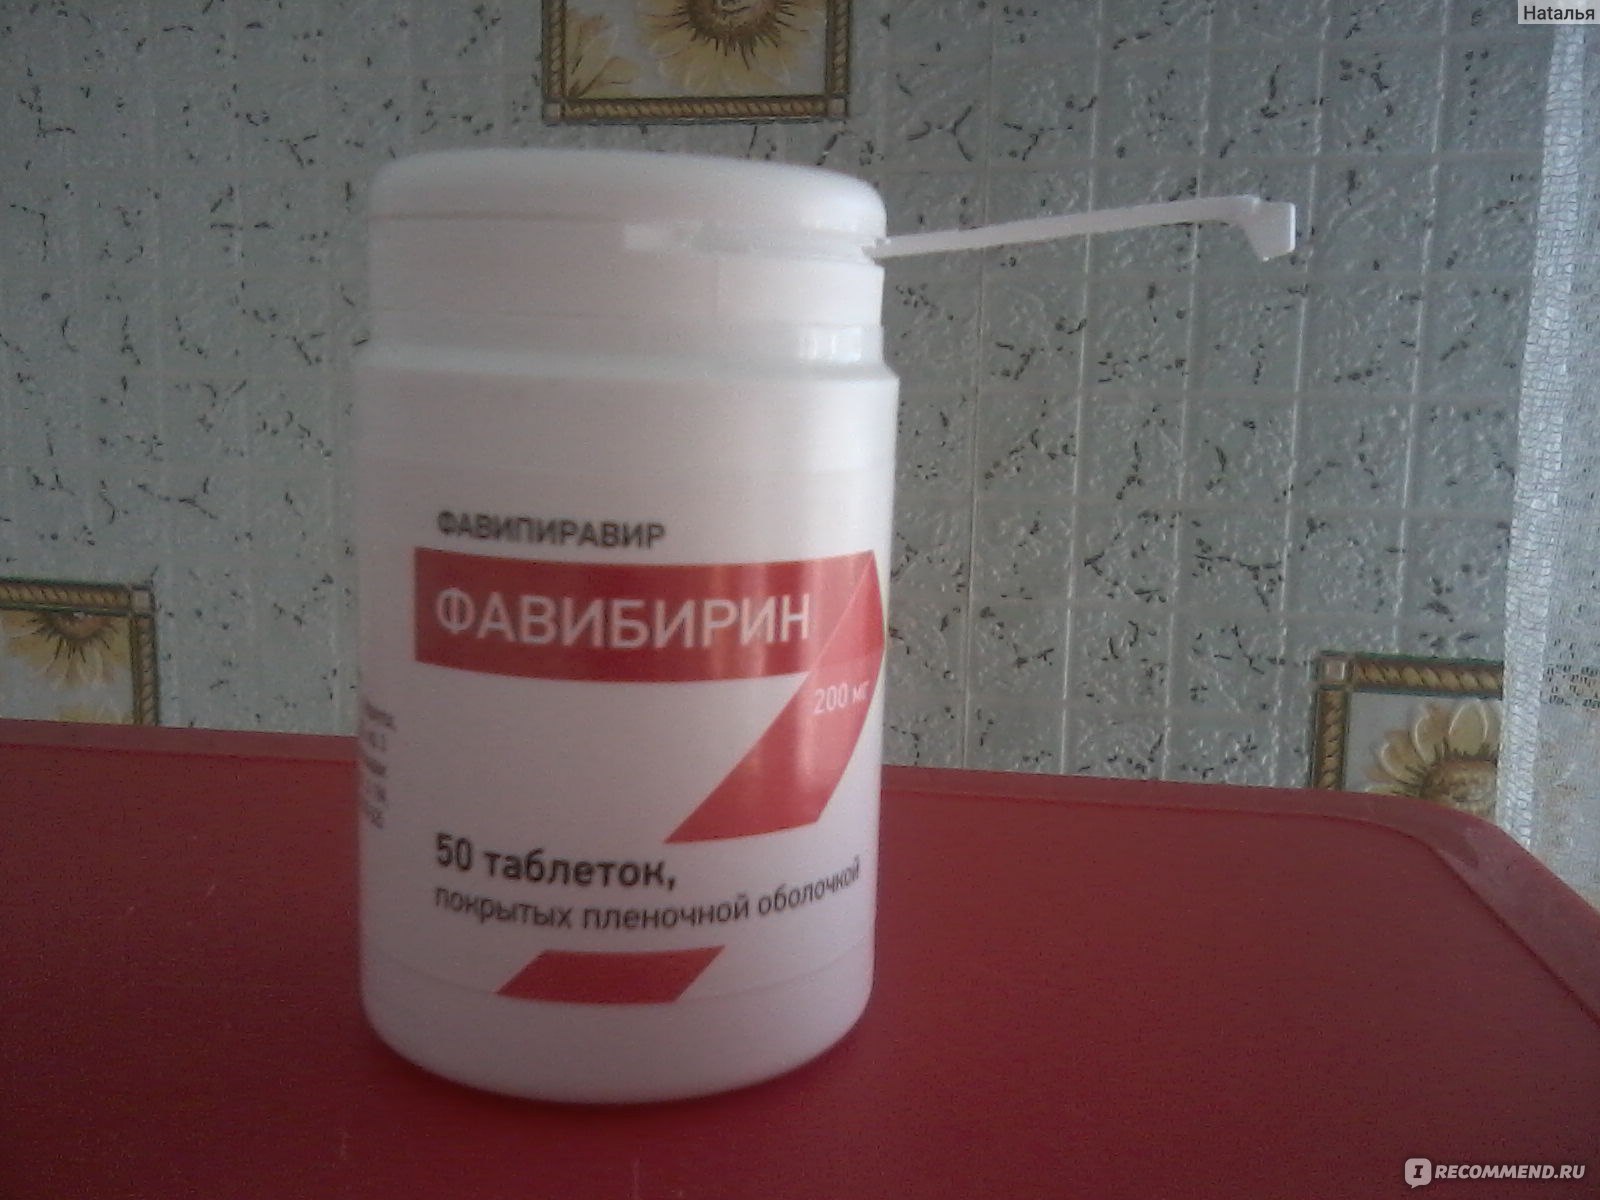 фавибирин фото таблеток